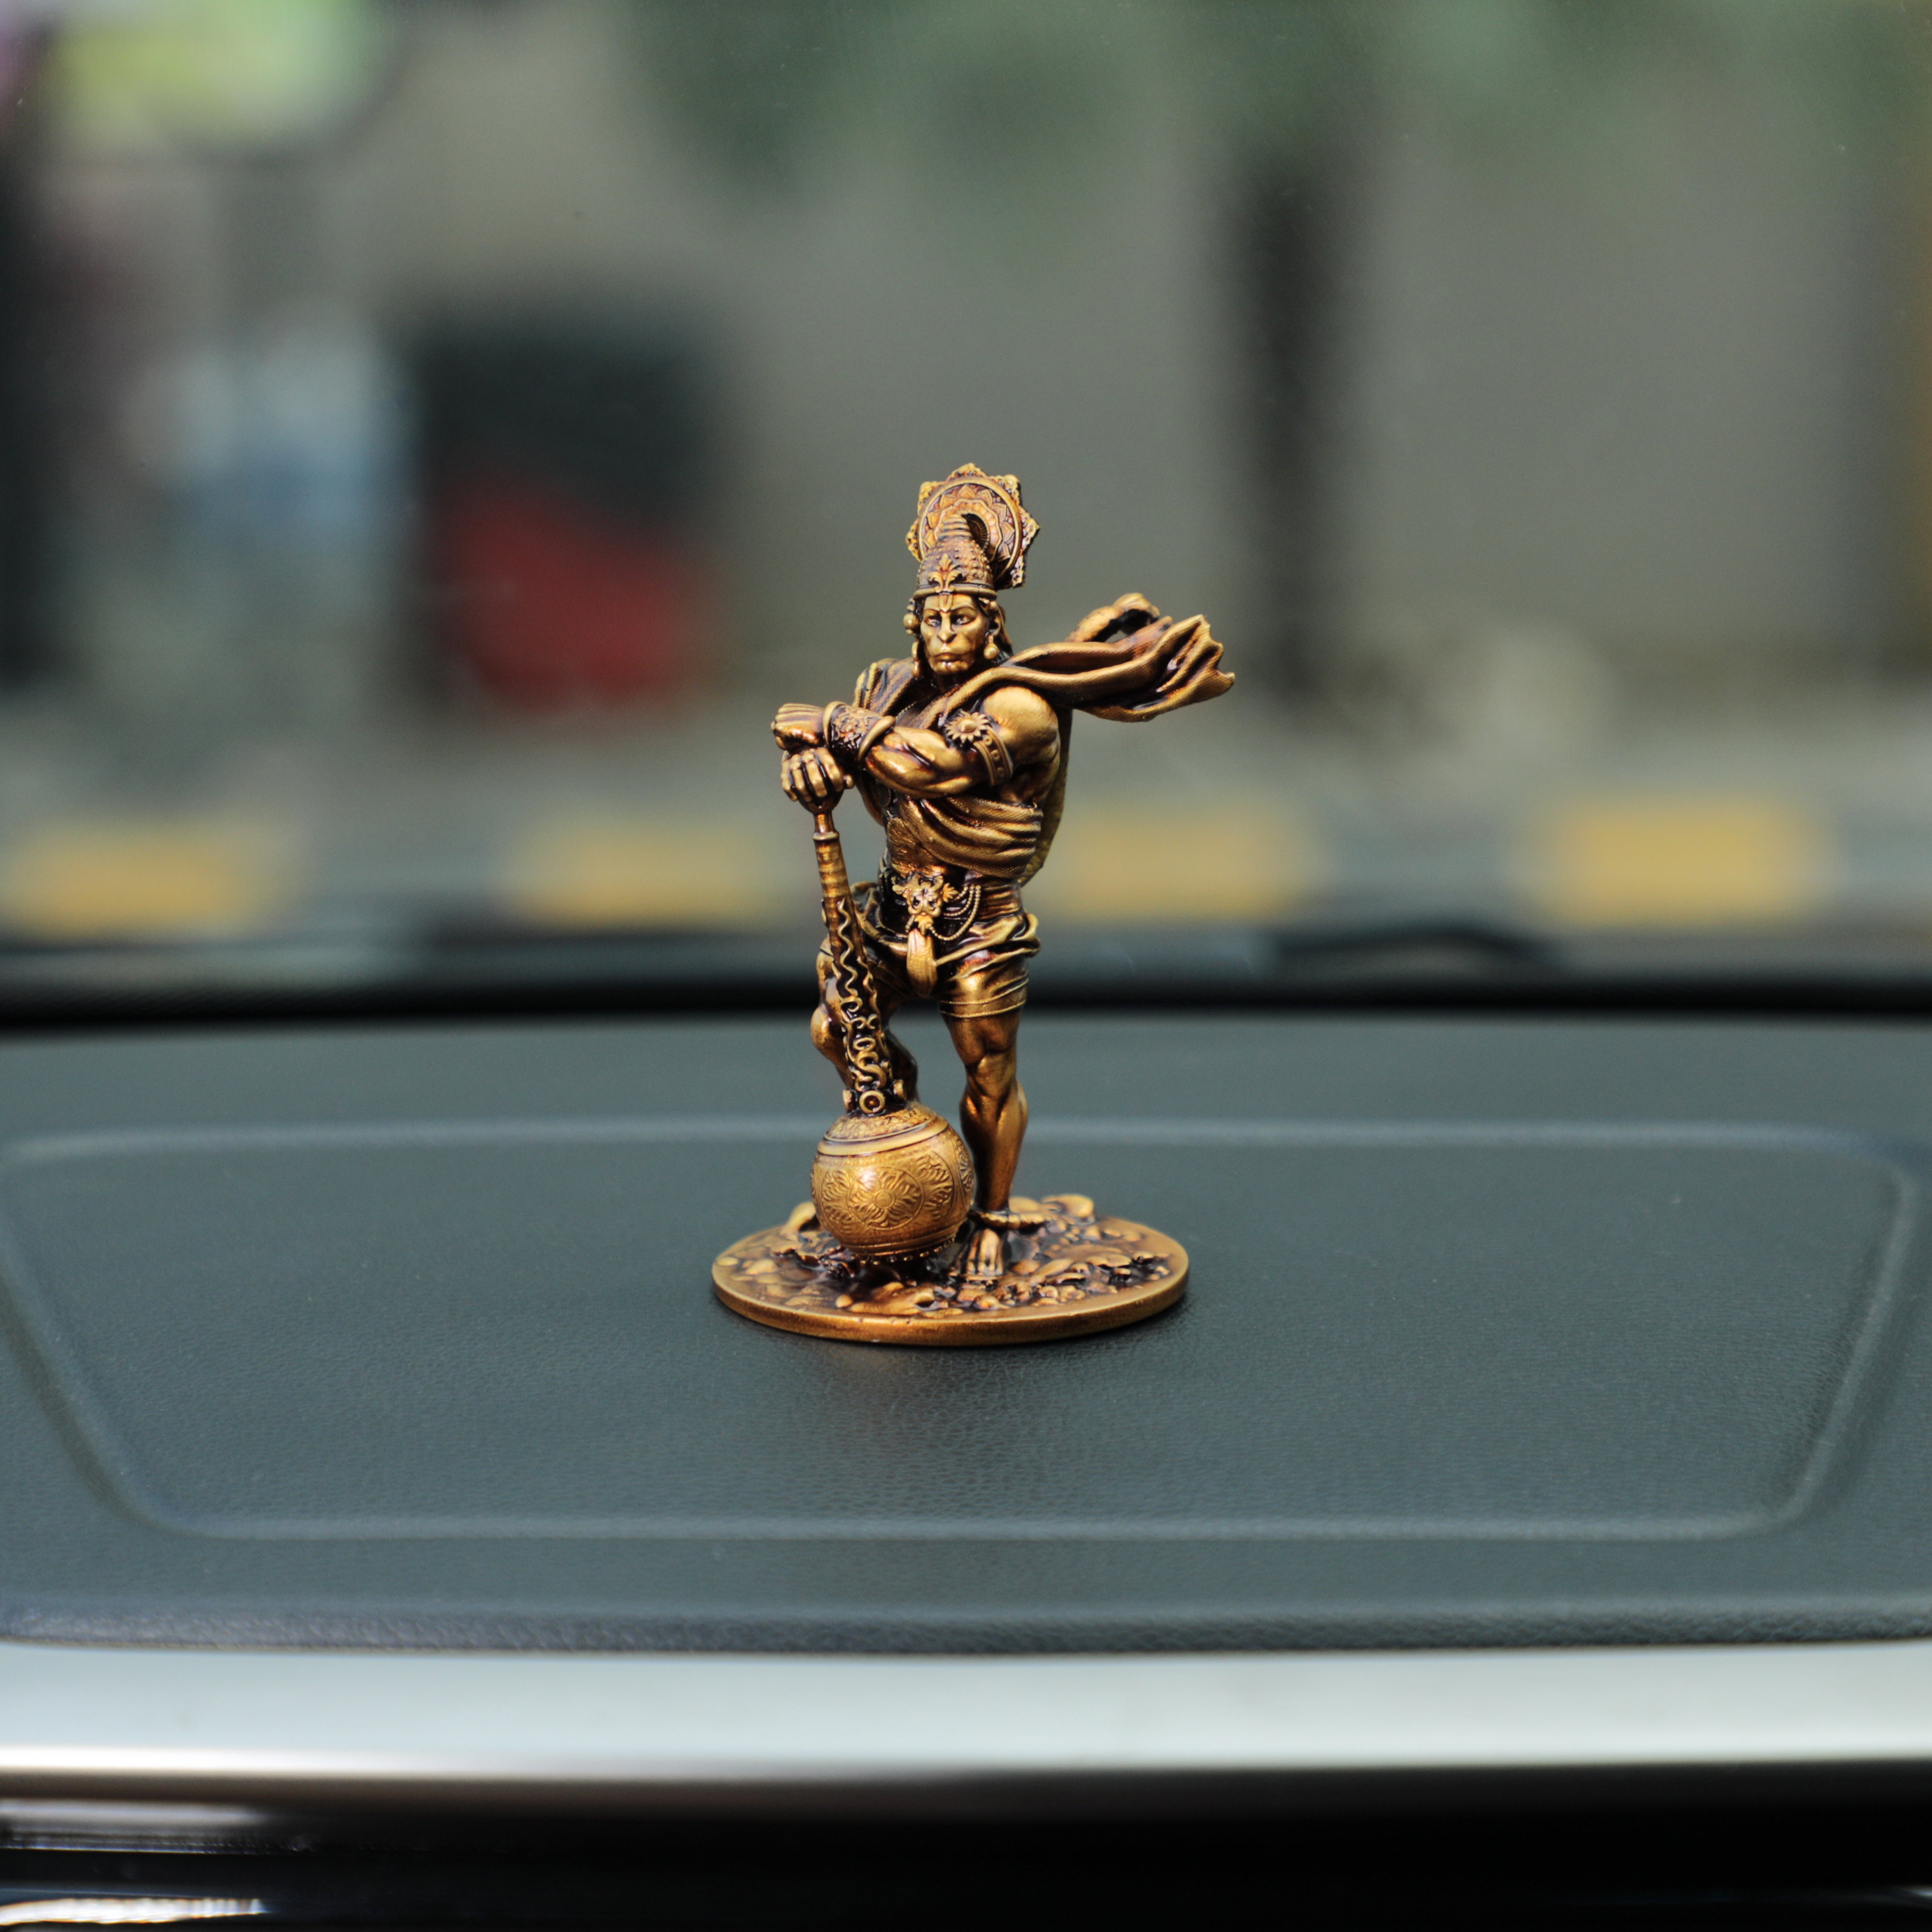 Bahubali Hanuman Car Dashboard